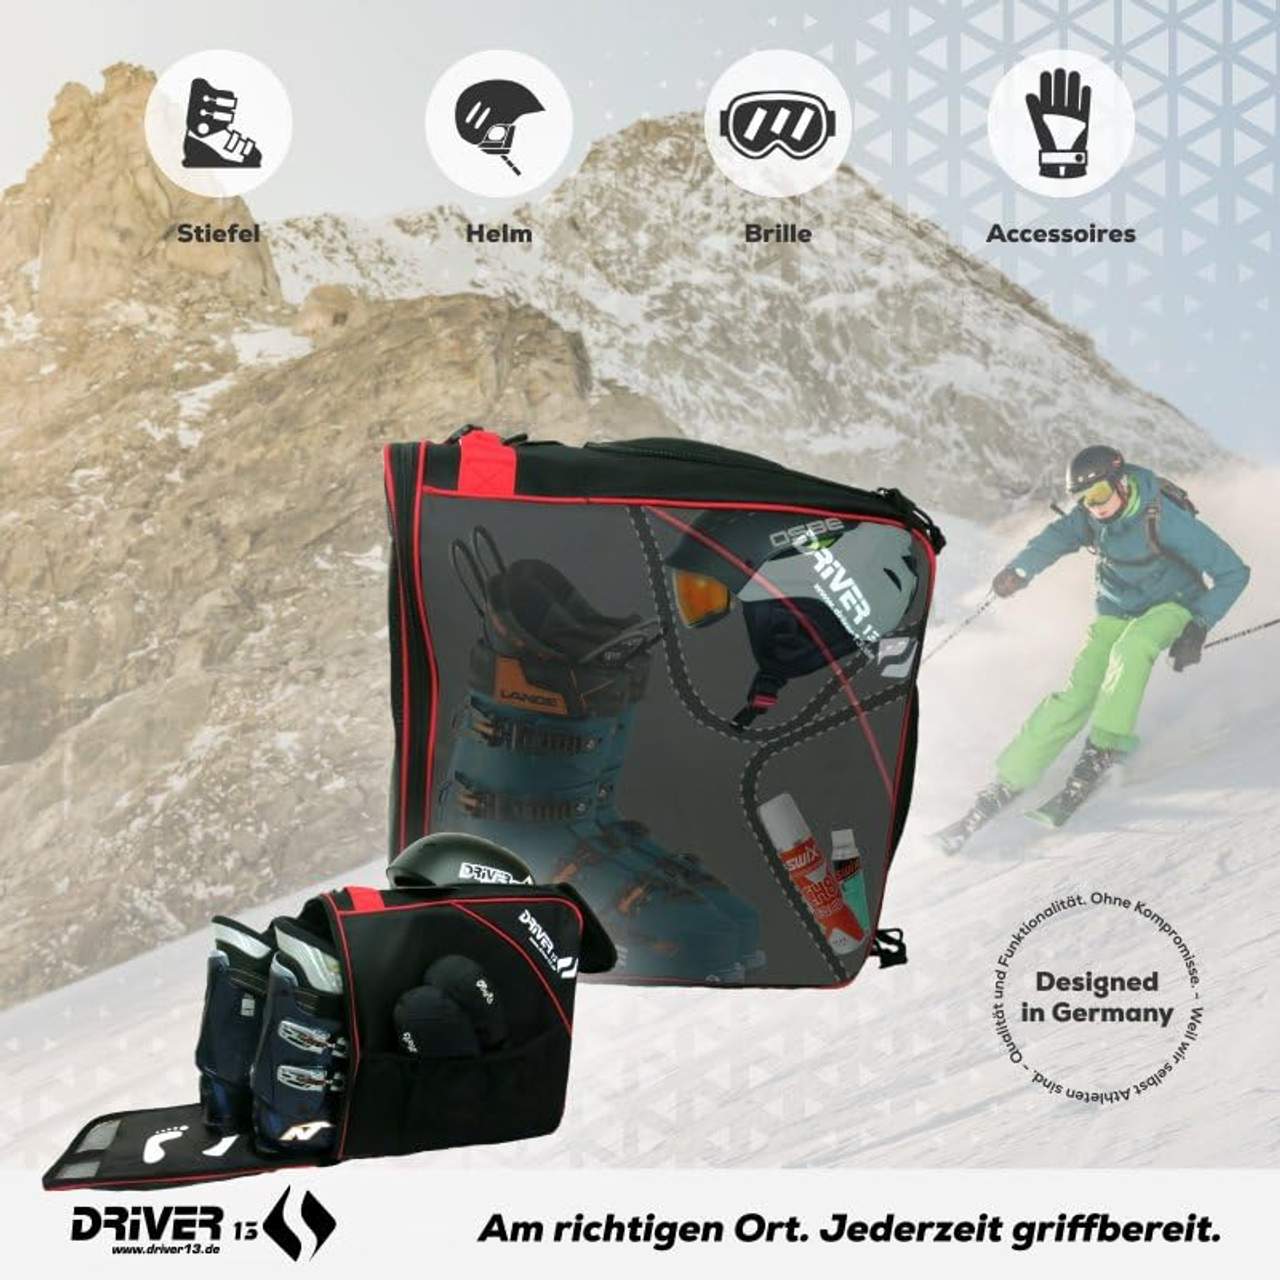 Driver13 Skischuhtasche Skistiefeltasche mit Helmfach für Hart Softboots Inliner und Bootbag Tasche schwarz-rot